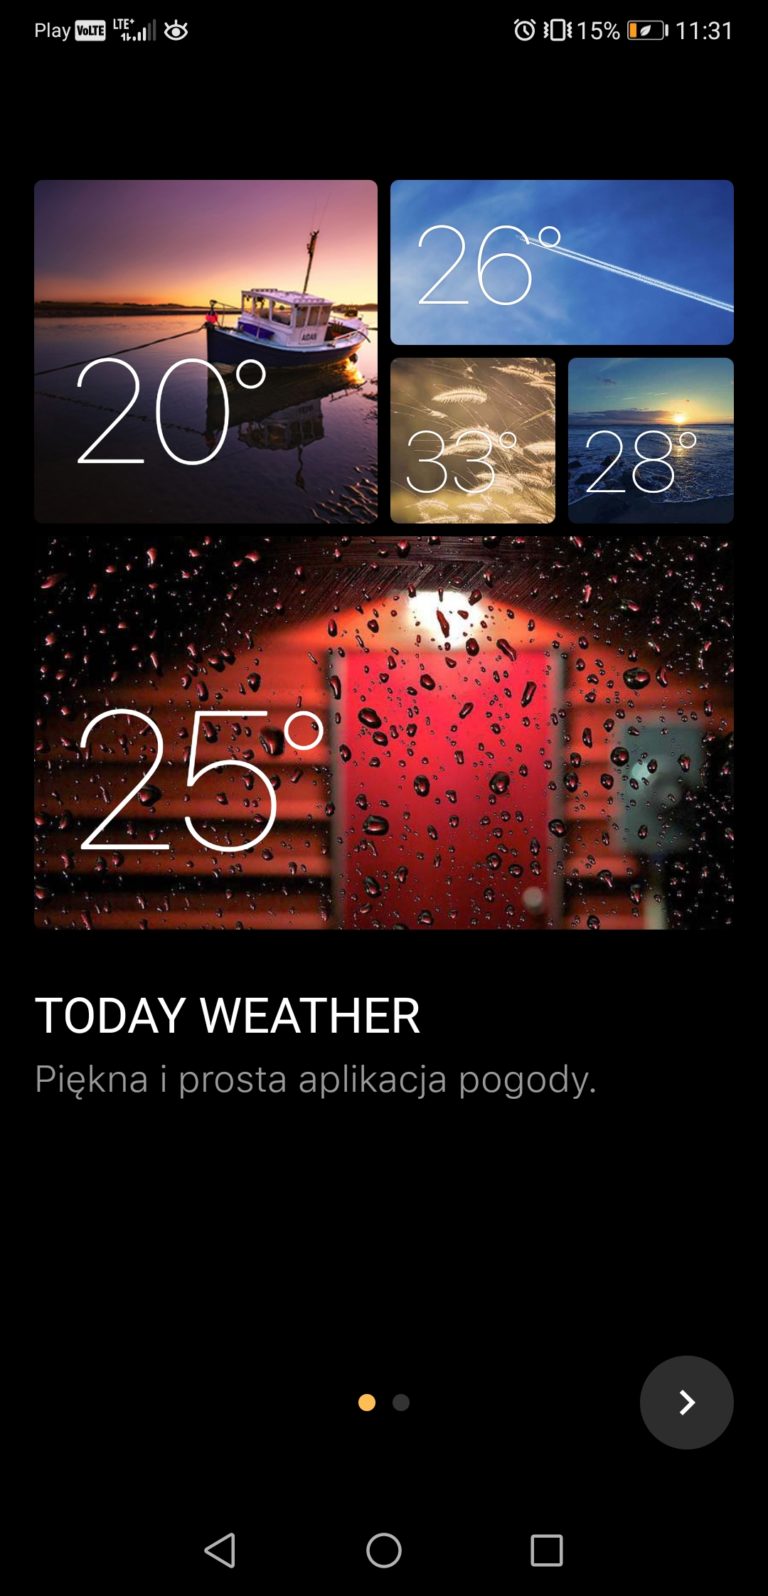 Today weather aplikacja pogodowa android ios